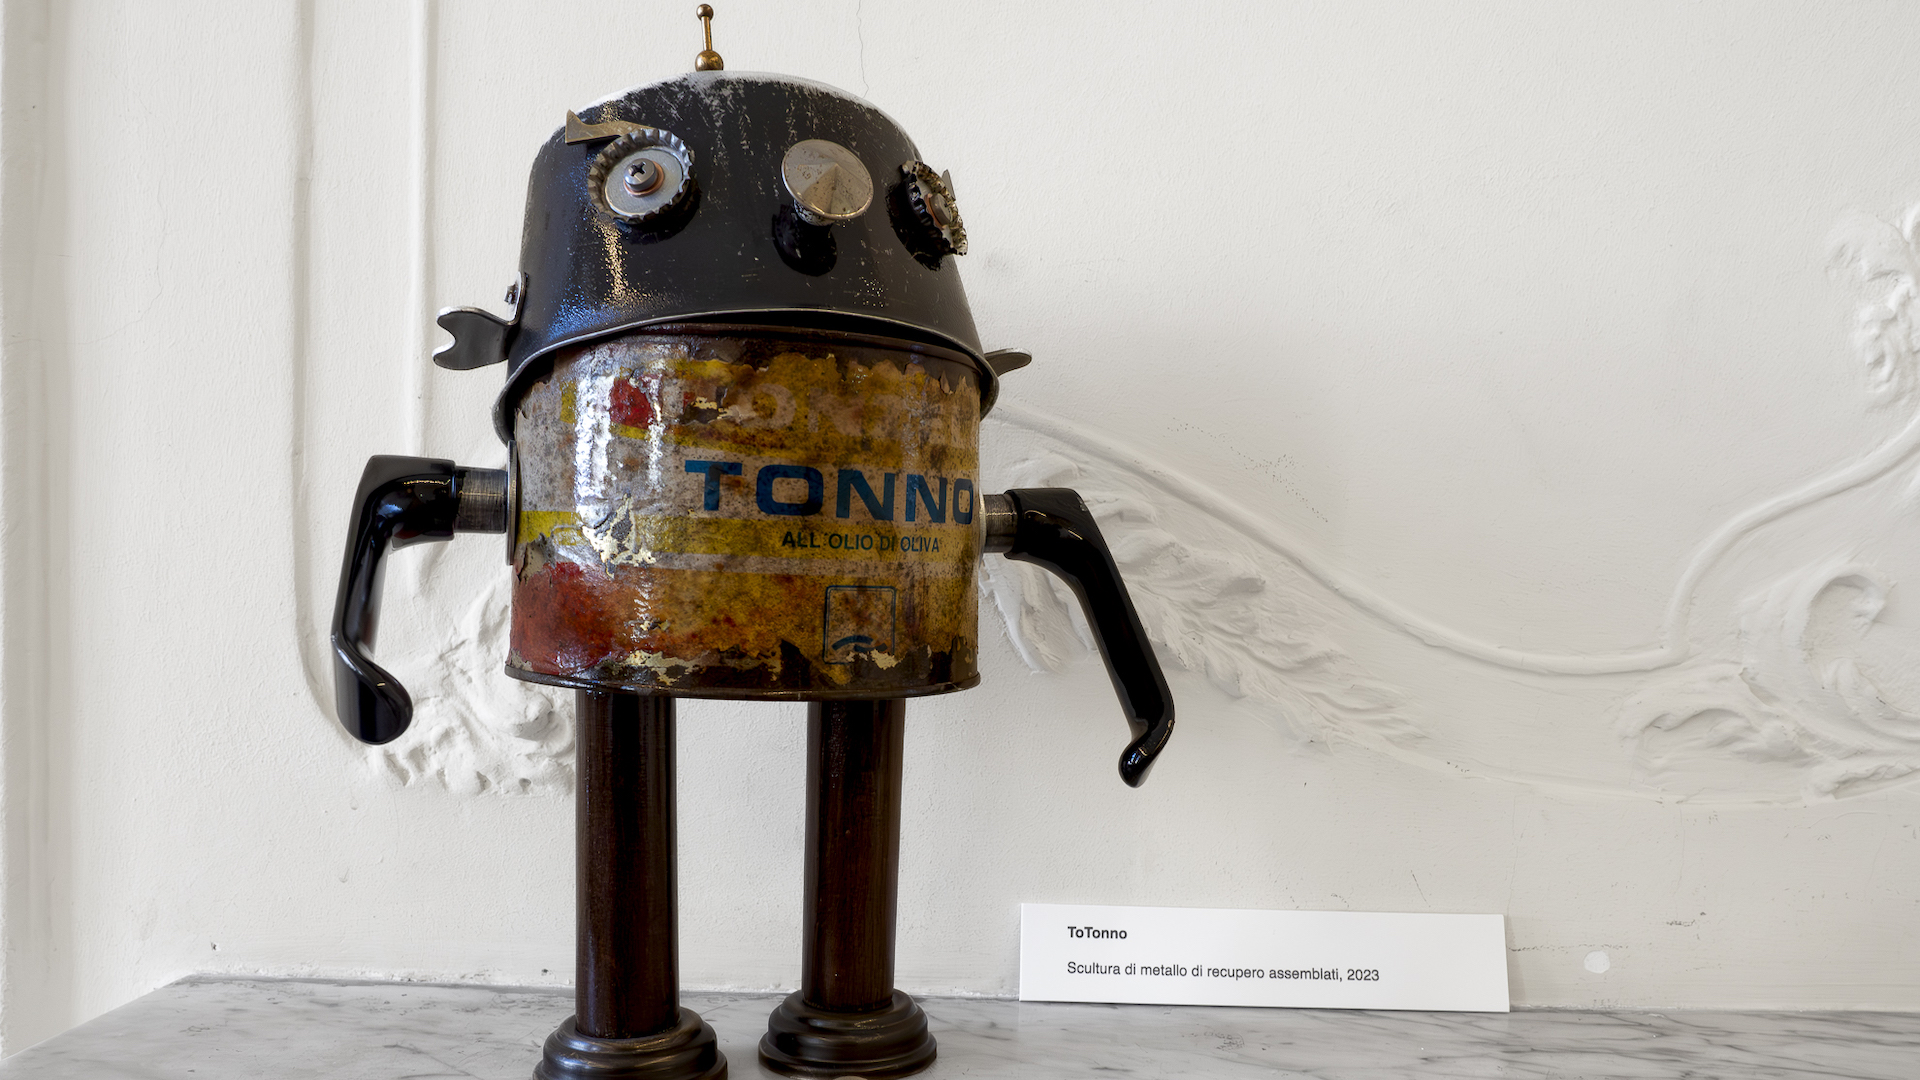 La robotica, l’arte, le persone e l’ambiente nelle opere poetiche di Massimo Sirelli